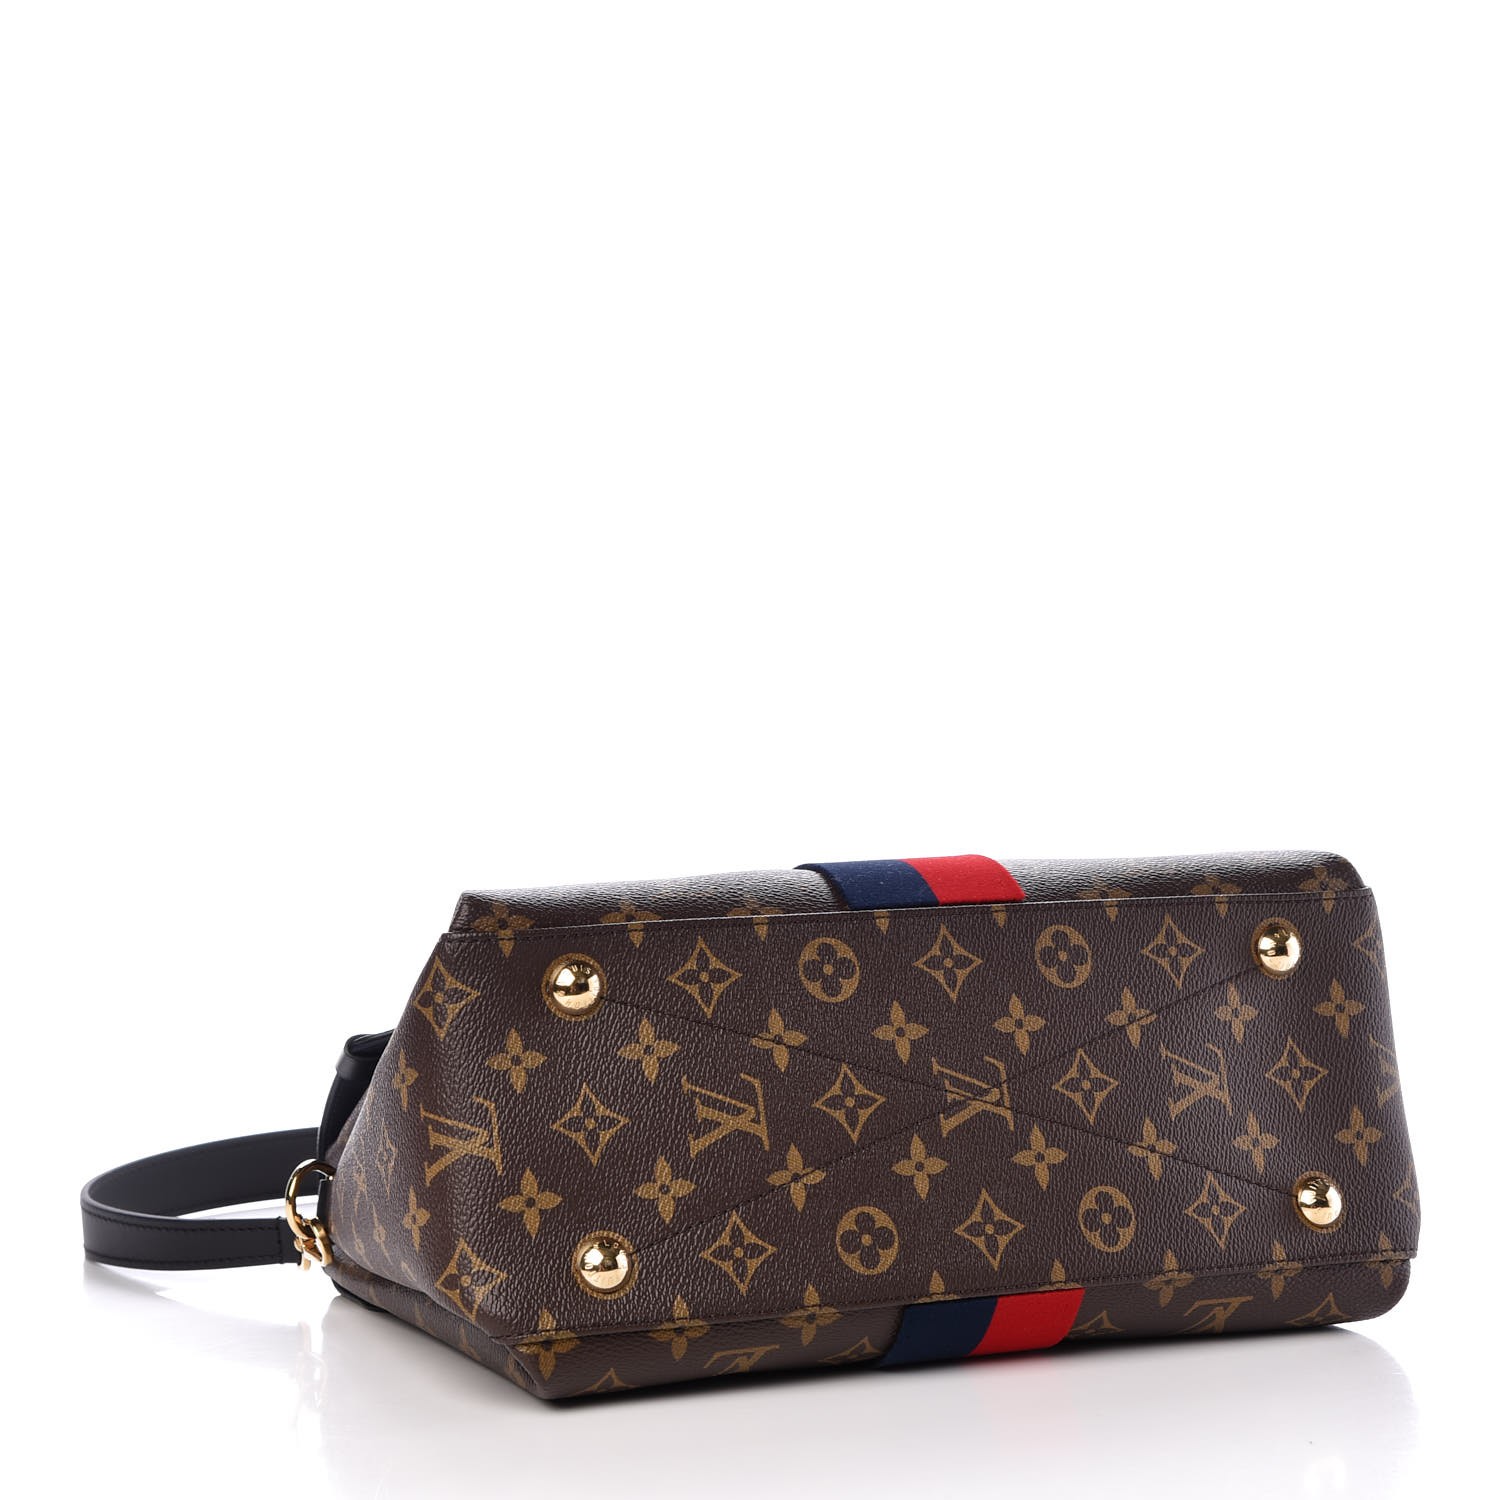 Louis Vuitton Georges Black Canvas Handbag (Pre-Owned)